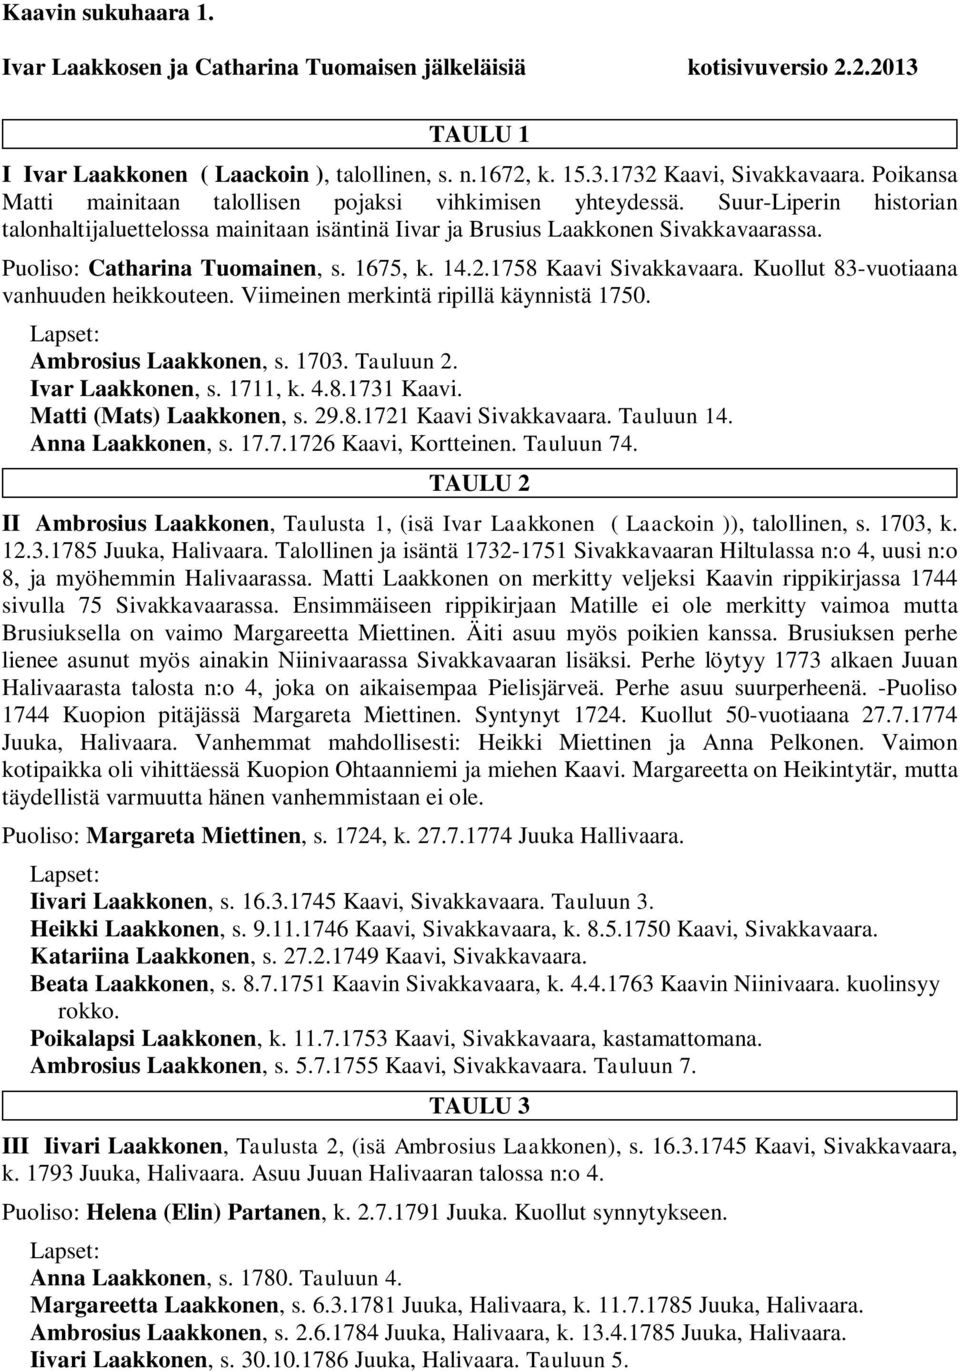 Puoliso: Catharina Tuomainen, s. 1675, k. 14.2.1758 Kaavi Sivakkavaara. Kuollut 83-vuotiaana vanhuuden heikkouteen. Viimeinen merkintä ripillä käynnistä 1750. Ambrosius Laakkonen, s. 1703. Tauluun 2.